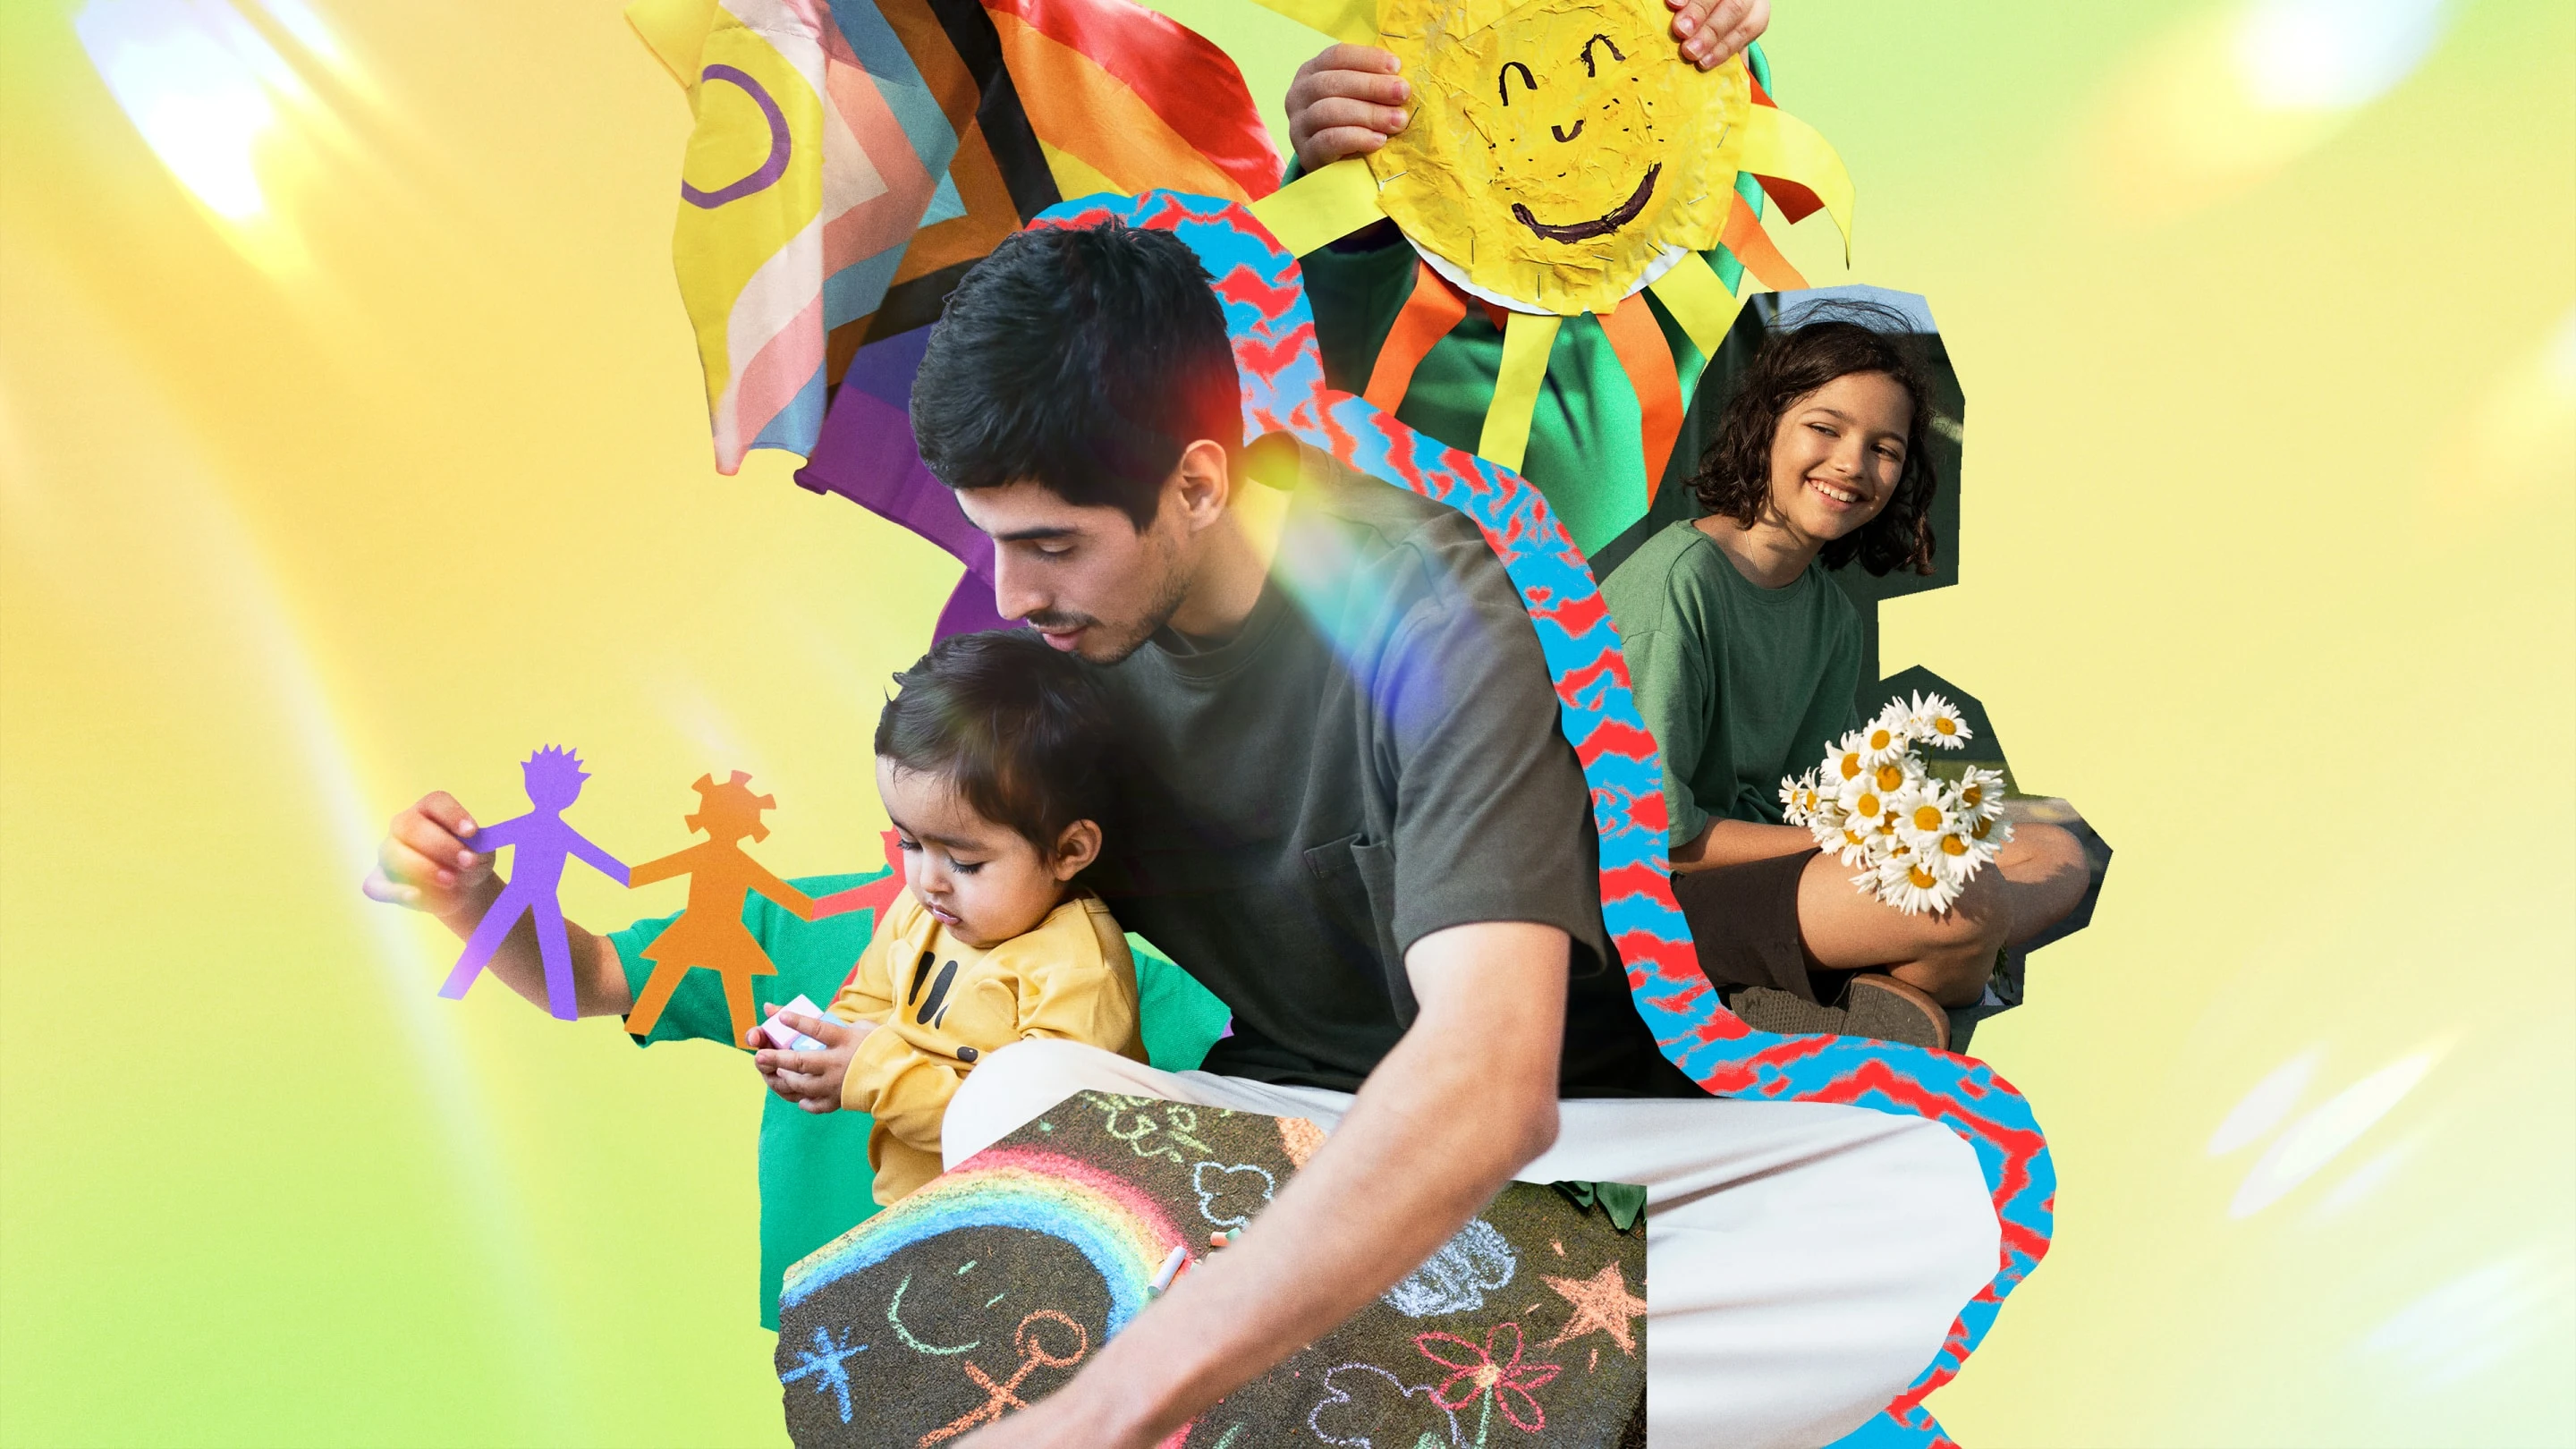 Colagem brilhante com a Bandeira Progressista do Orgulho LGBTQIA+ e, no centro, duas crianças latinas, bem como uma figura paterna desfrutando de artesanato e atividades.